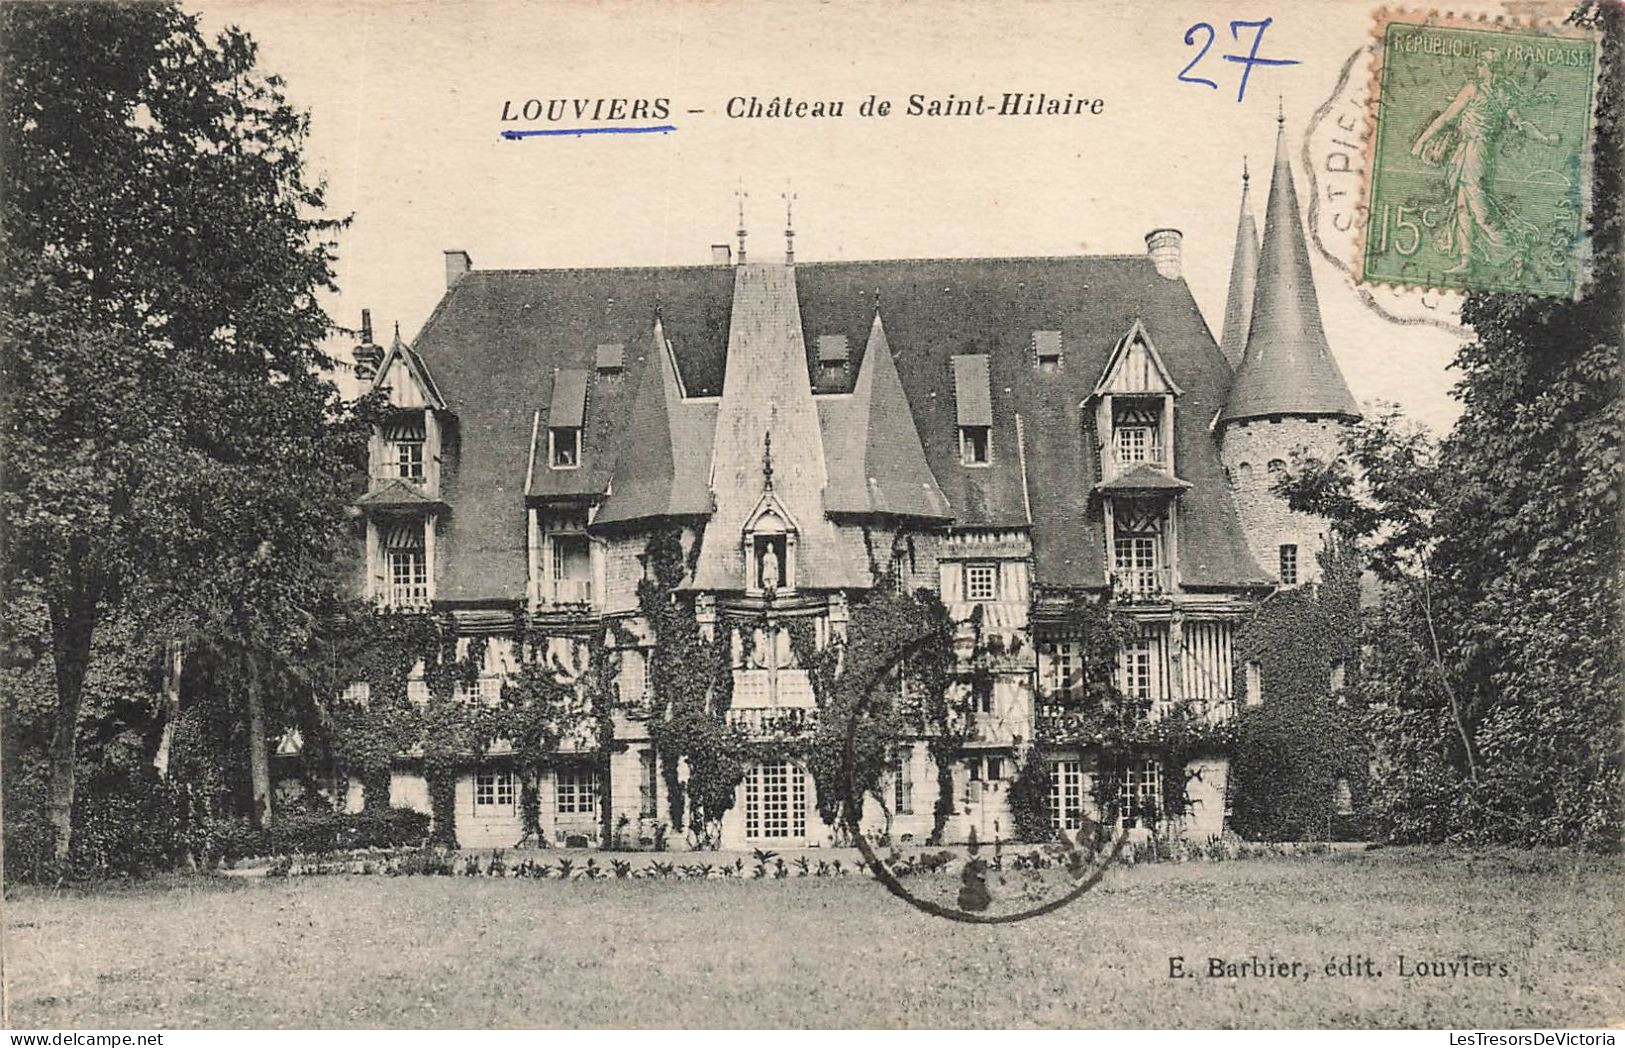 FRANCE - Louviers - Vue Générale Du Château De Saint Hilaire - Vue De De L'extérieur Du Château - Carte Postale Ancienne - Louviers